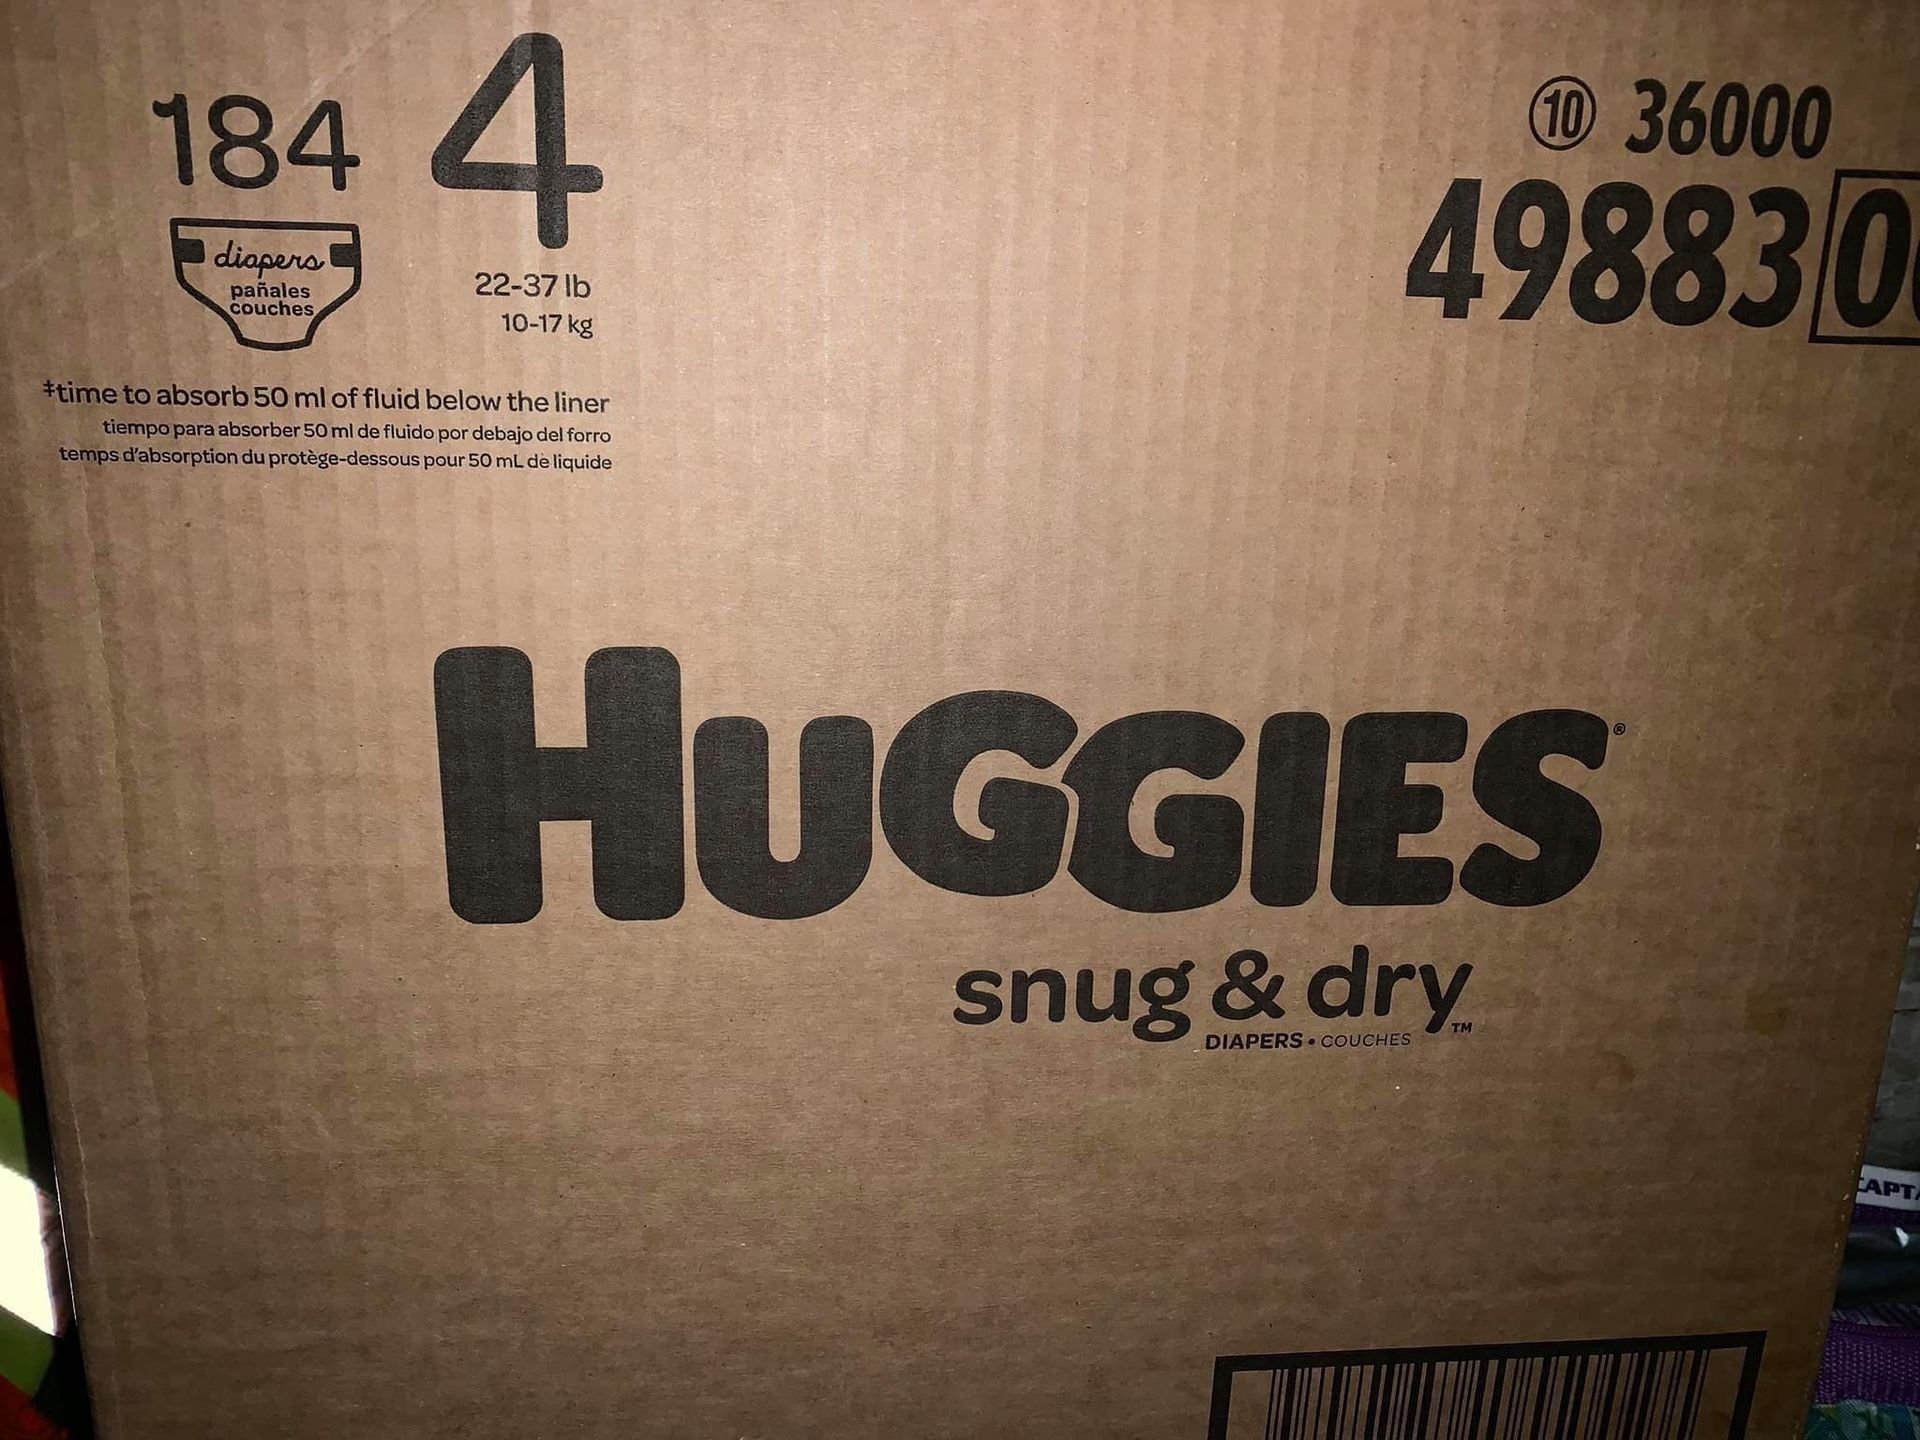 Huggies diapers/pañales size 4 snug dry